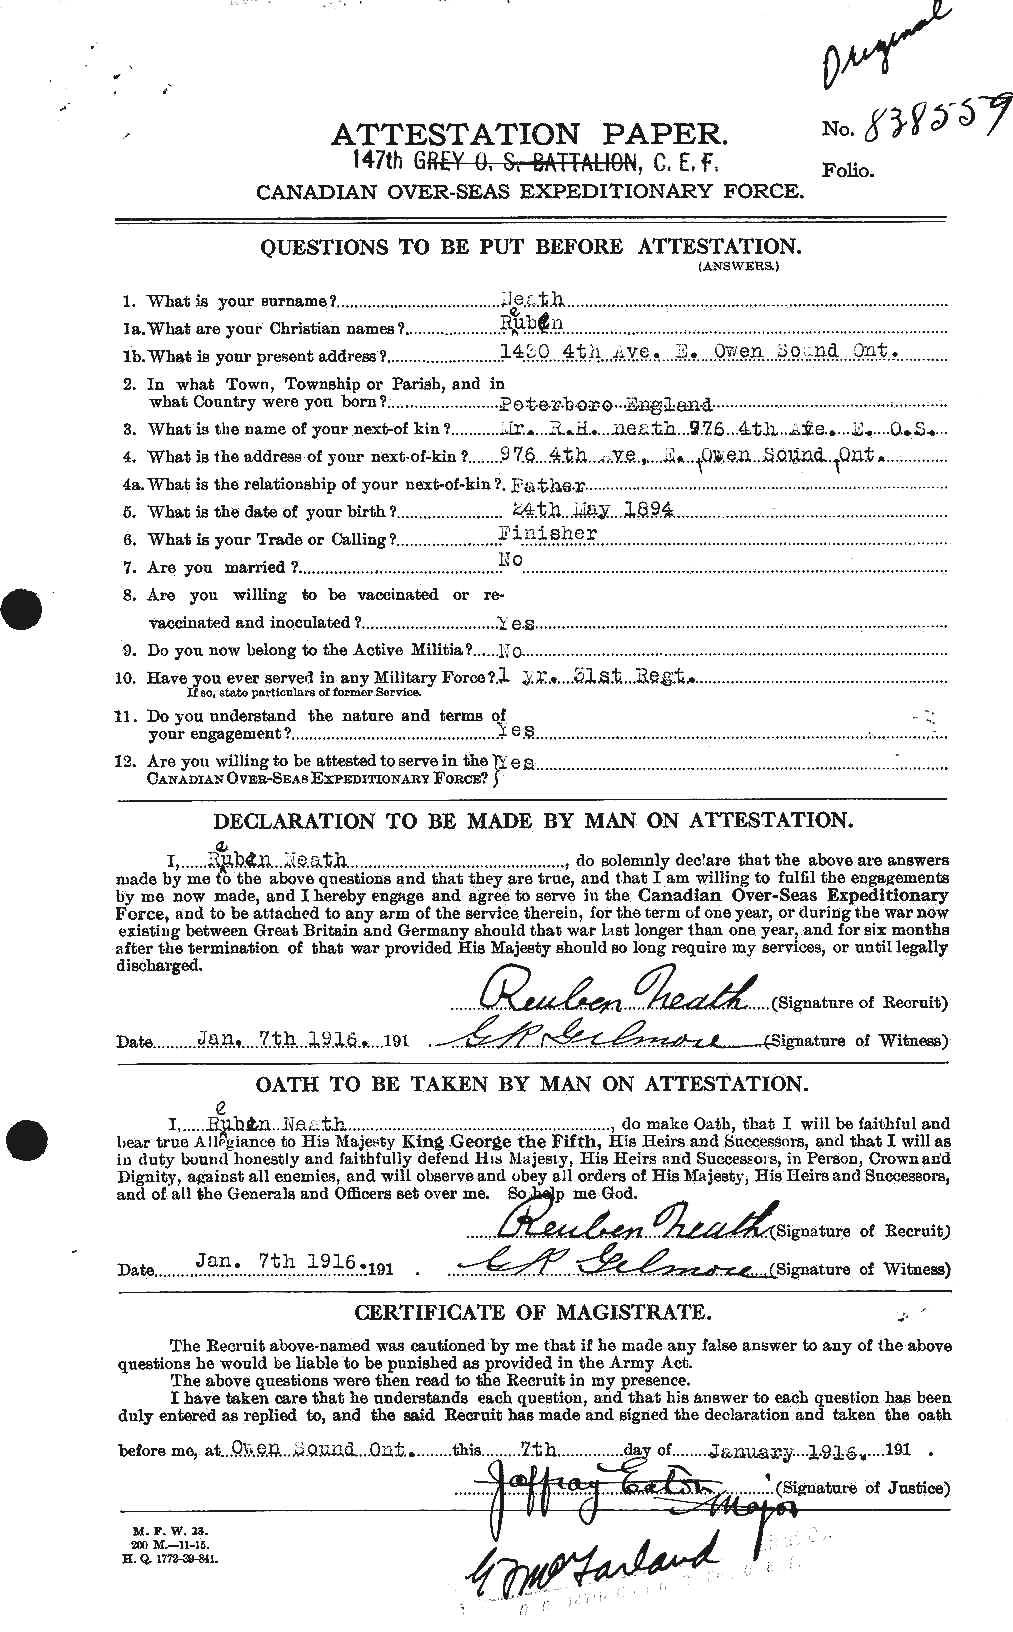 Dossiers du Personnel de la Première Guerre mondiale - CEC 545072a